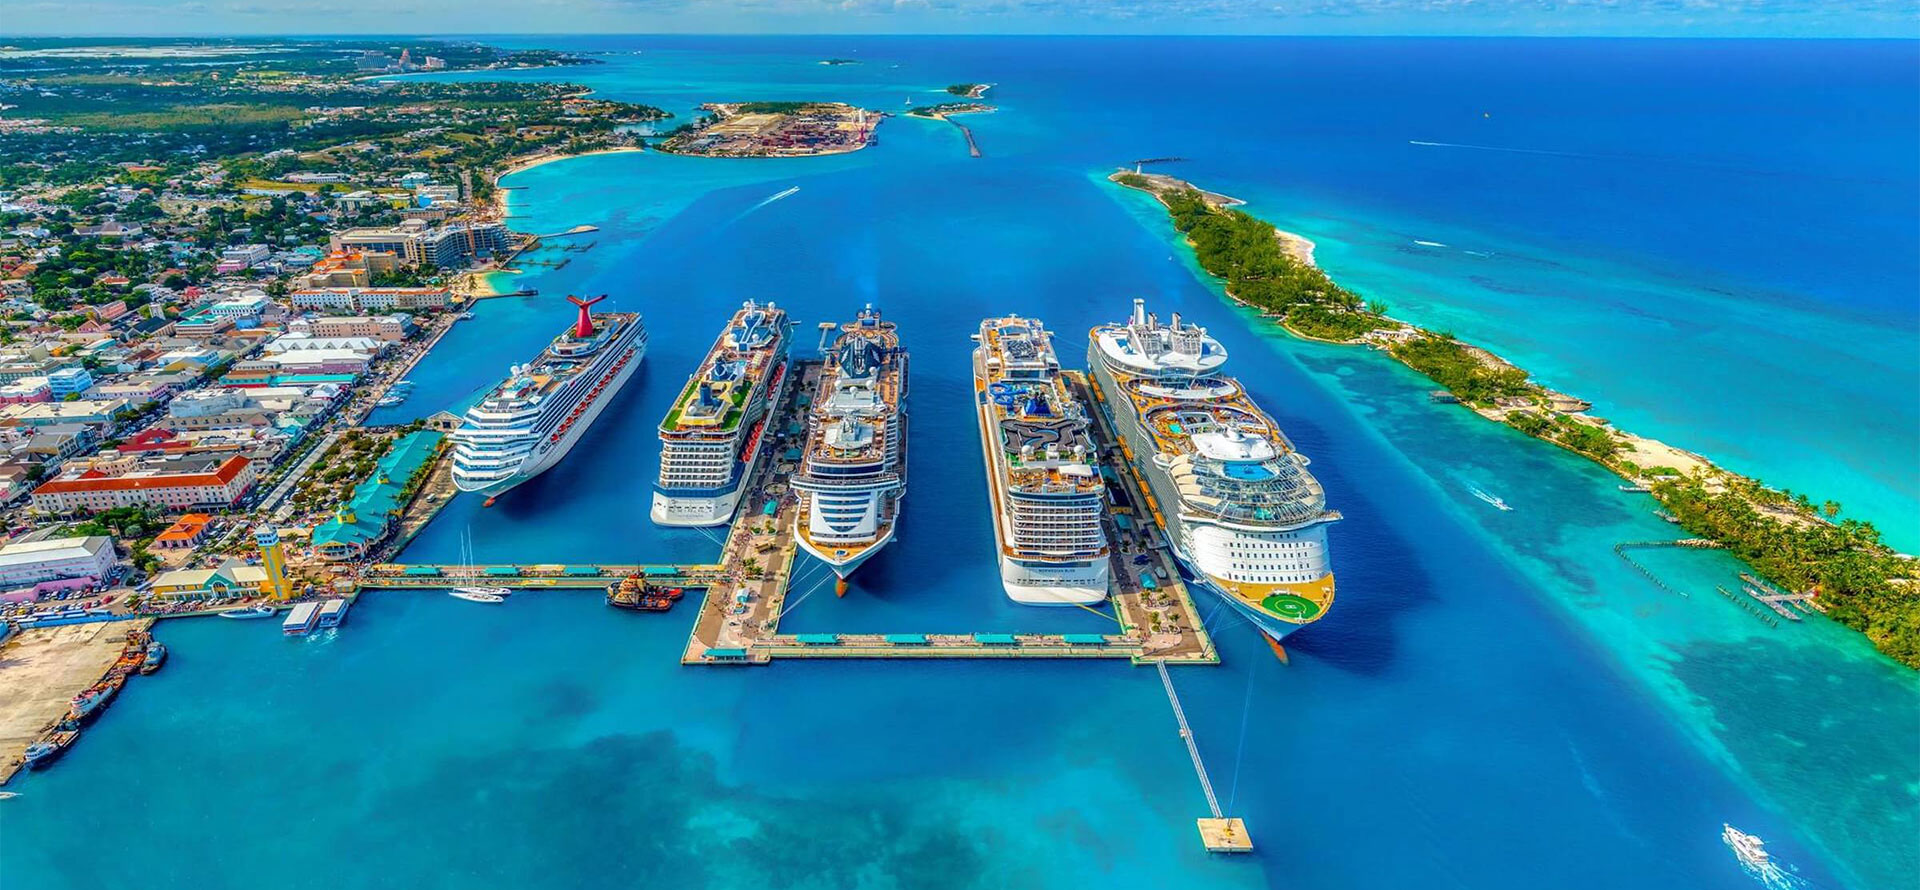 Top view of Bahamas and Maldives.